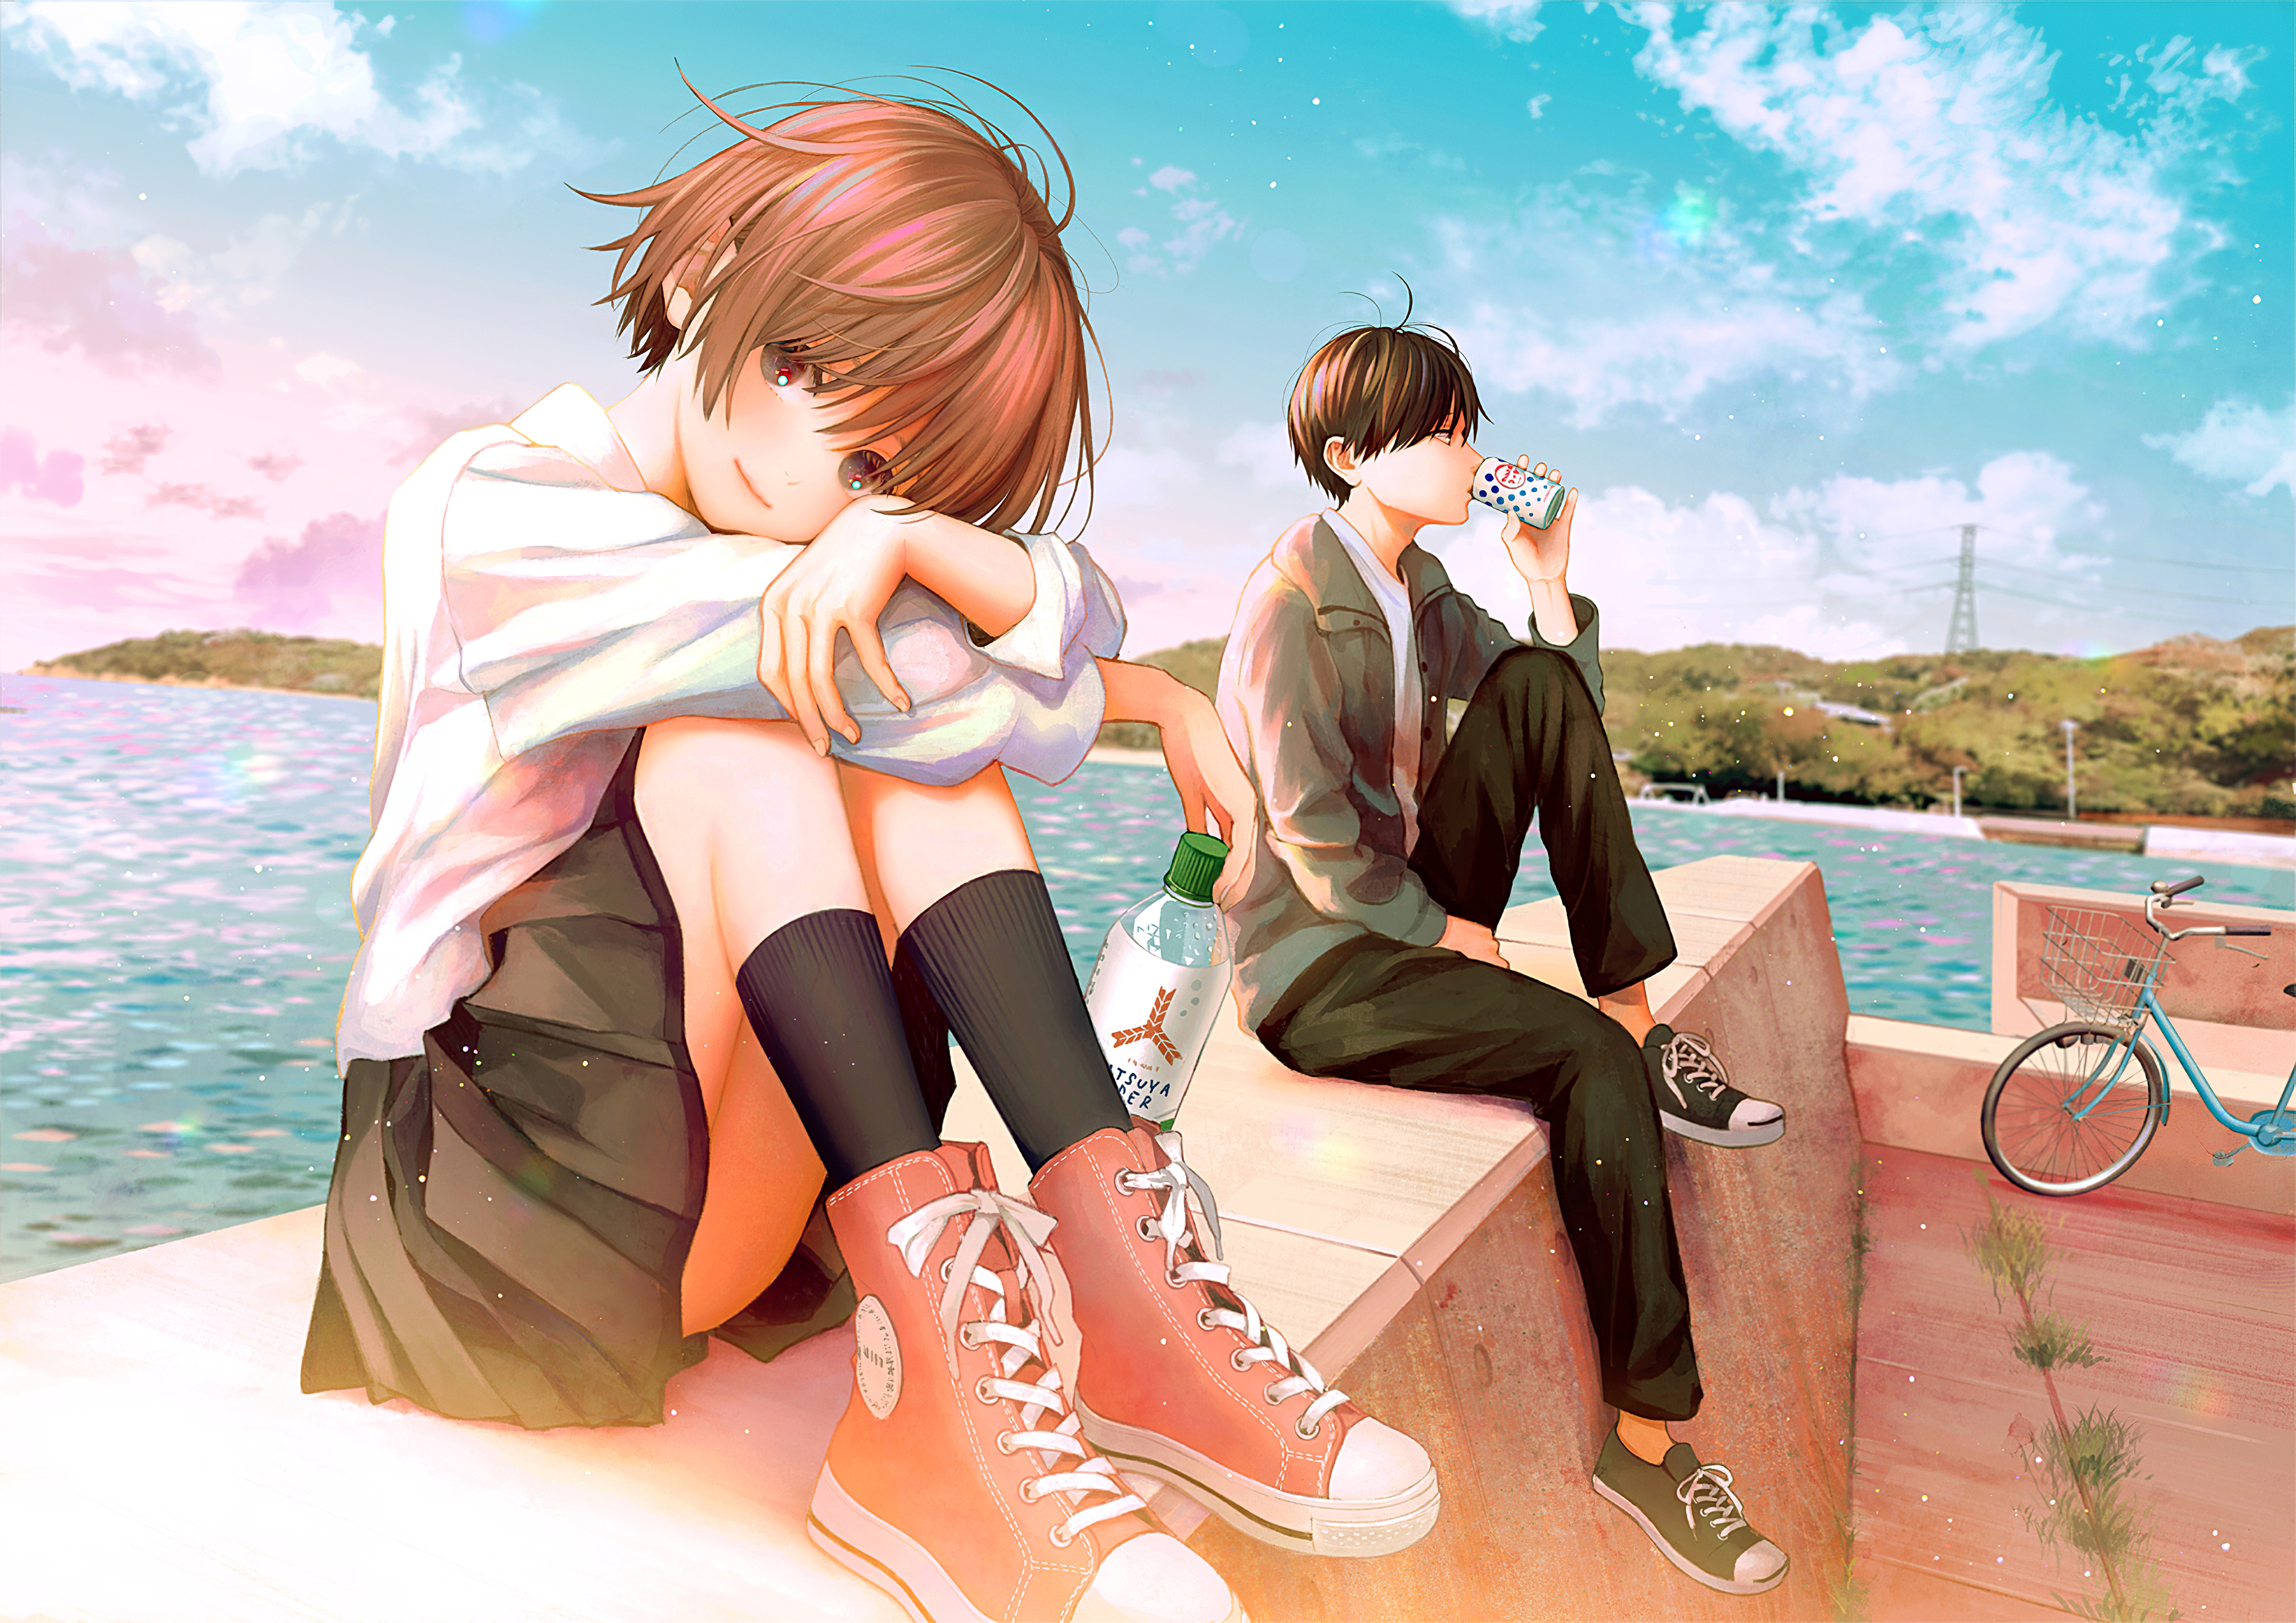 Dakaroth Wallpaper: Anime Couple | Anime kiss, Awesome anime, Anime romance